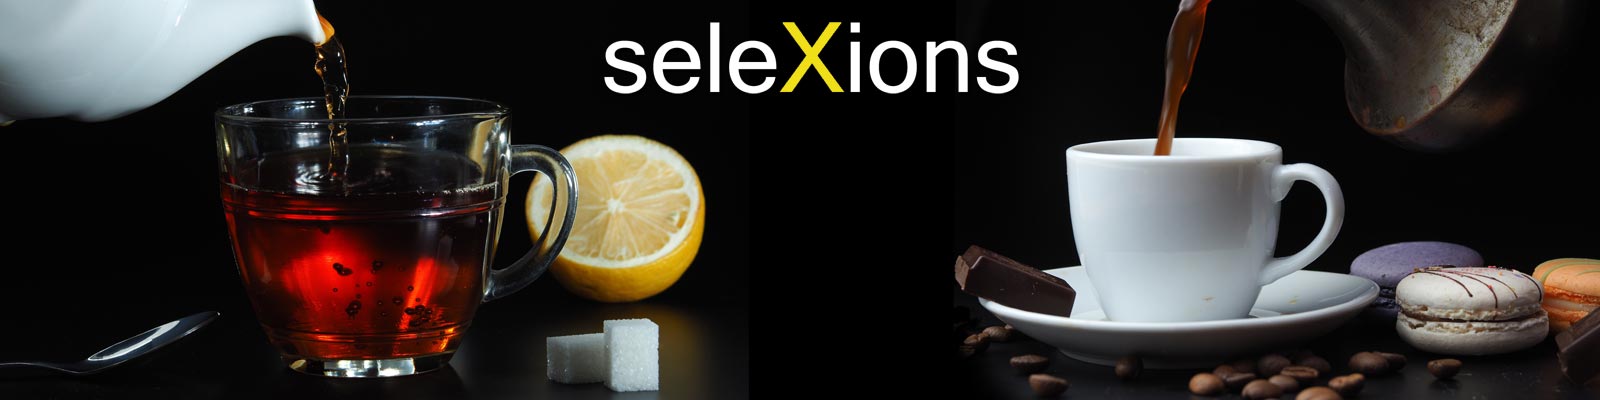 seleXions - für bestmöglichen Kaffee- oder Teegenuss